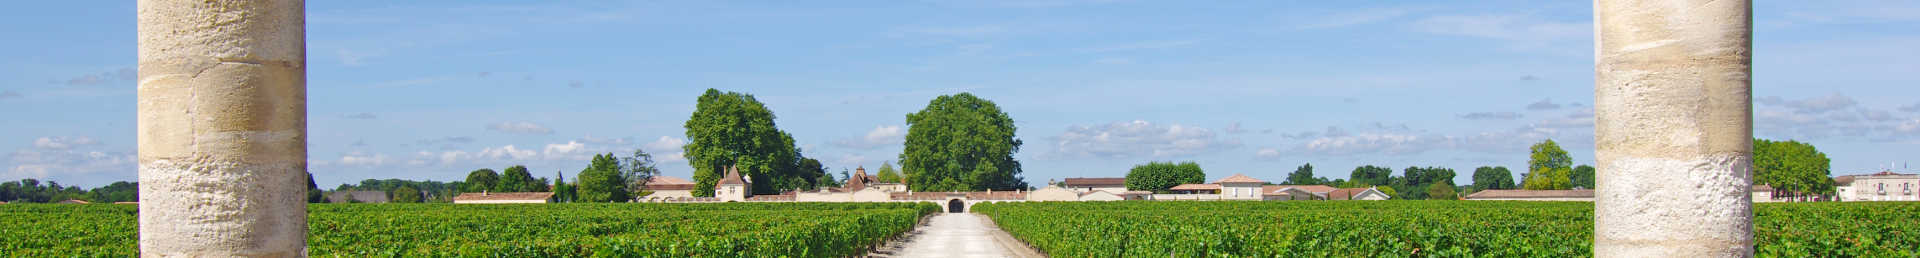 Image for St-Émilion Wine Bordeaux, France content section